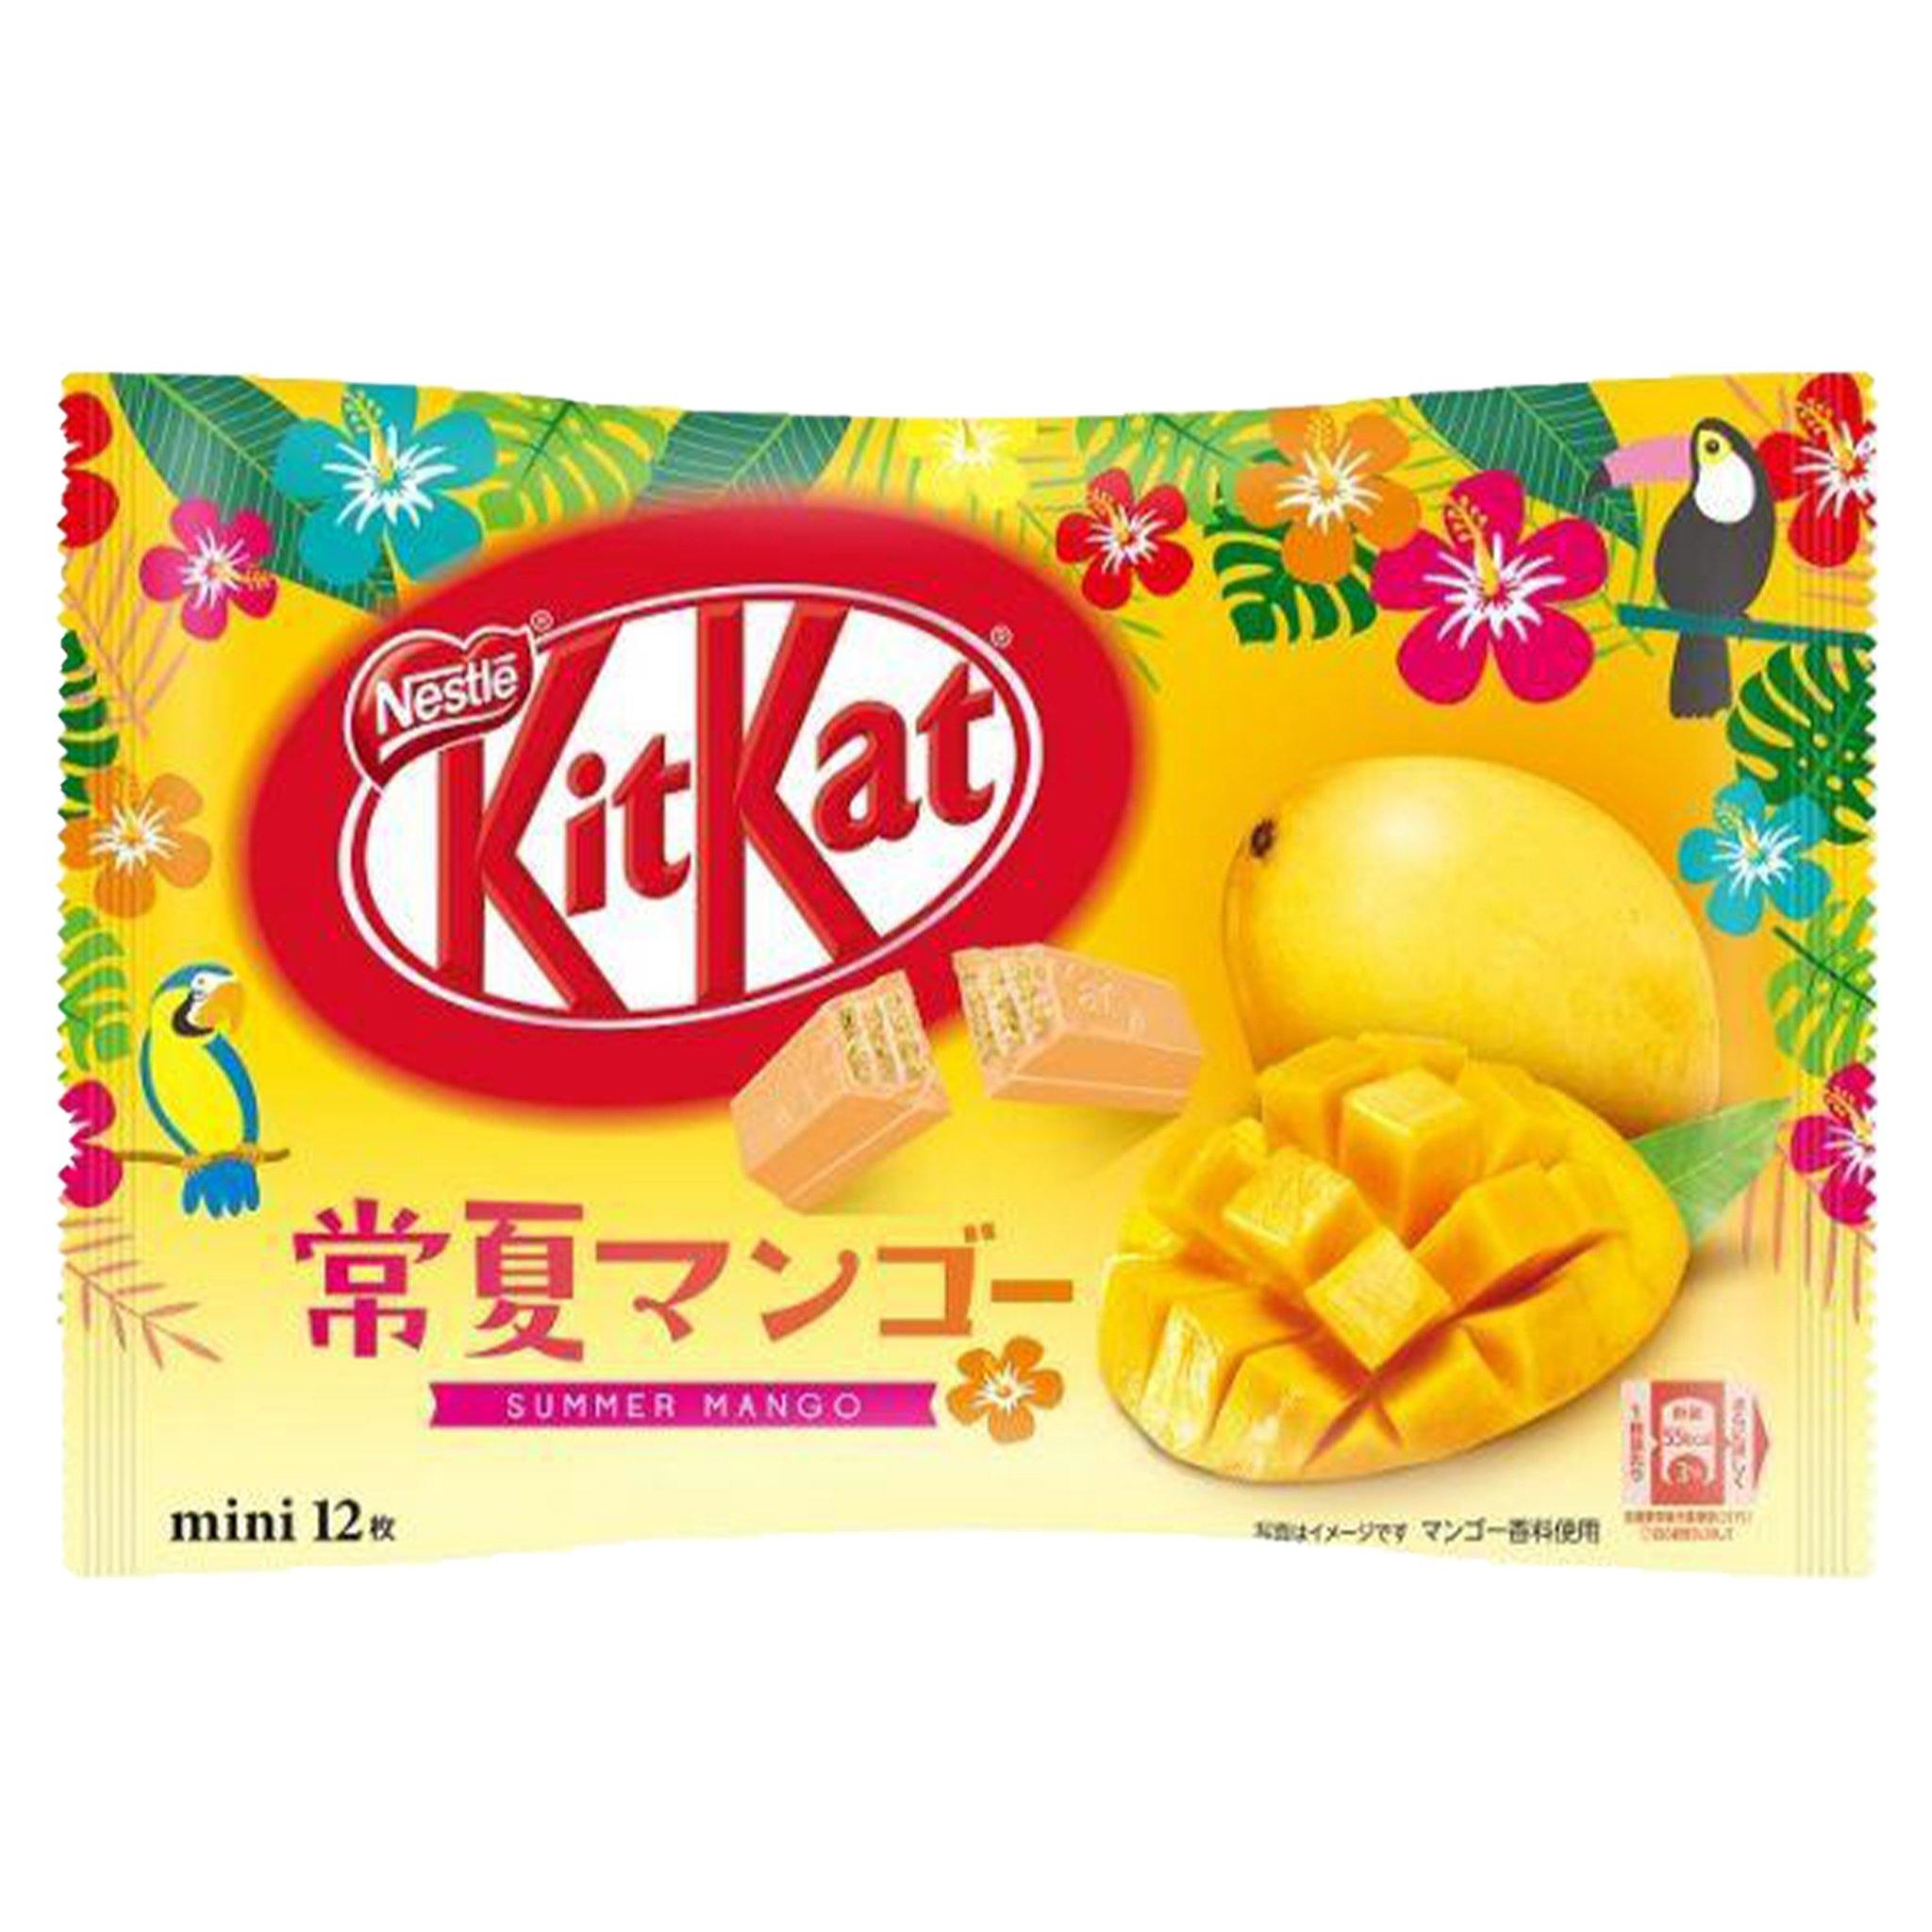 Kit Kat Mango - Japan - Sweet Exotics